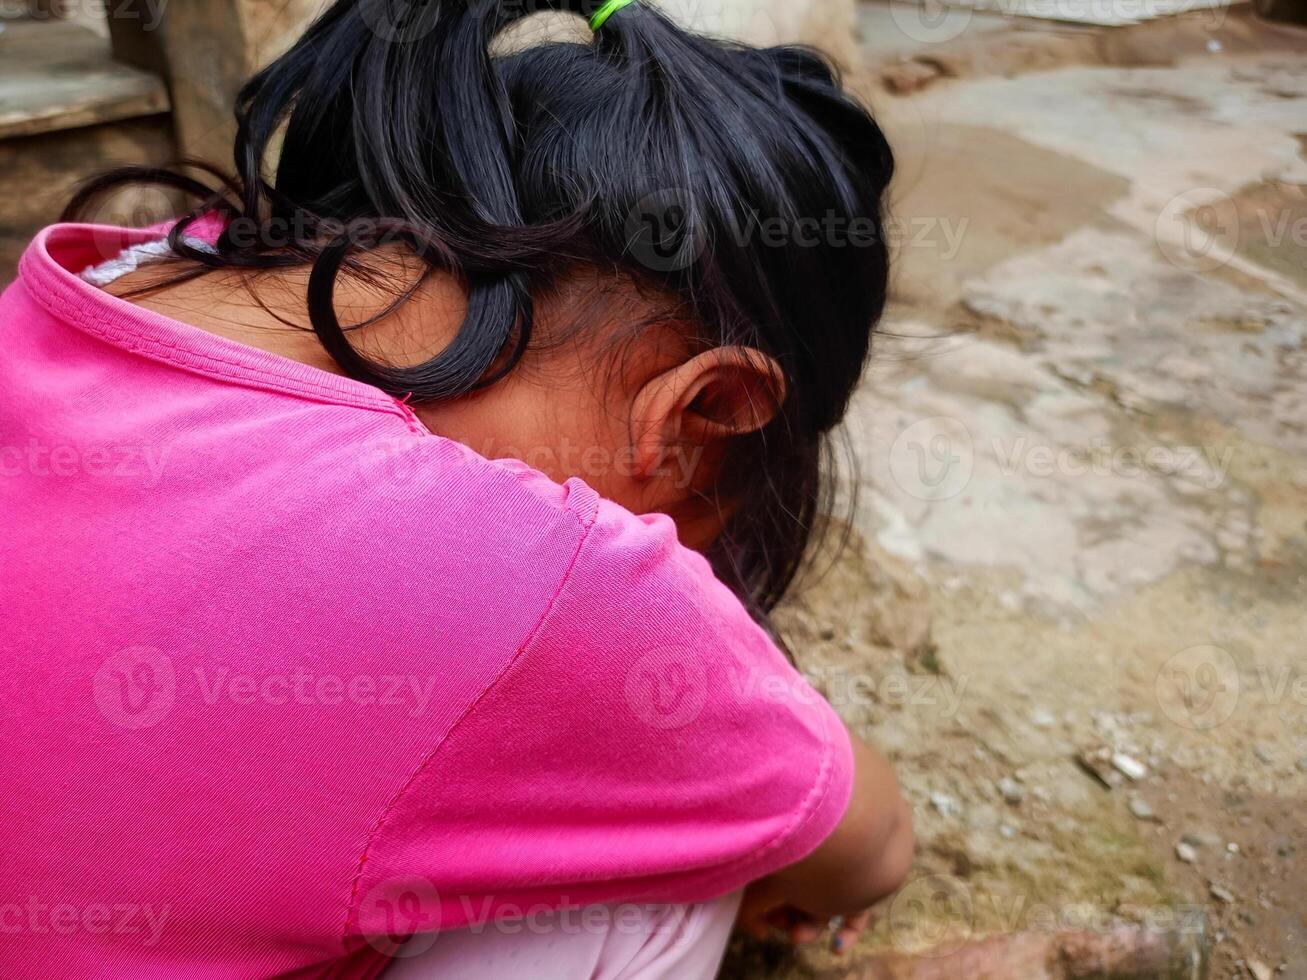 uma pequeno menina envelhecido 3-4 anos abaixado dela cabeça e coberto dela face com dela mãos. conceito foto do social problemas, família, violência contra crianças e criança Abuso.